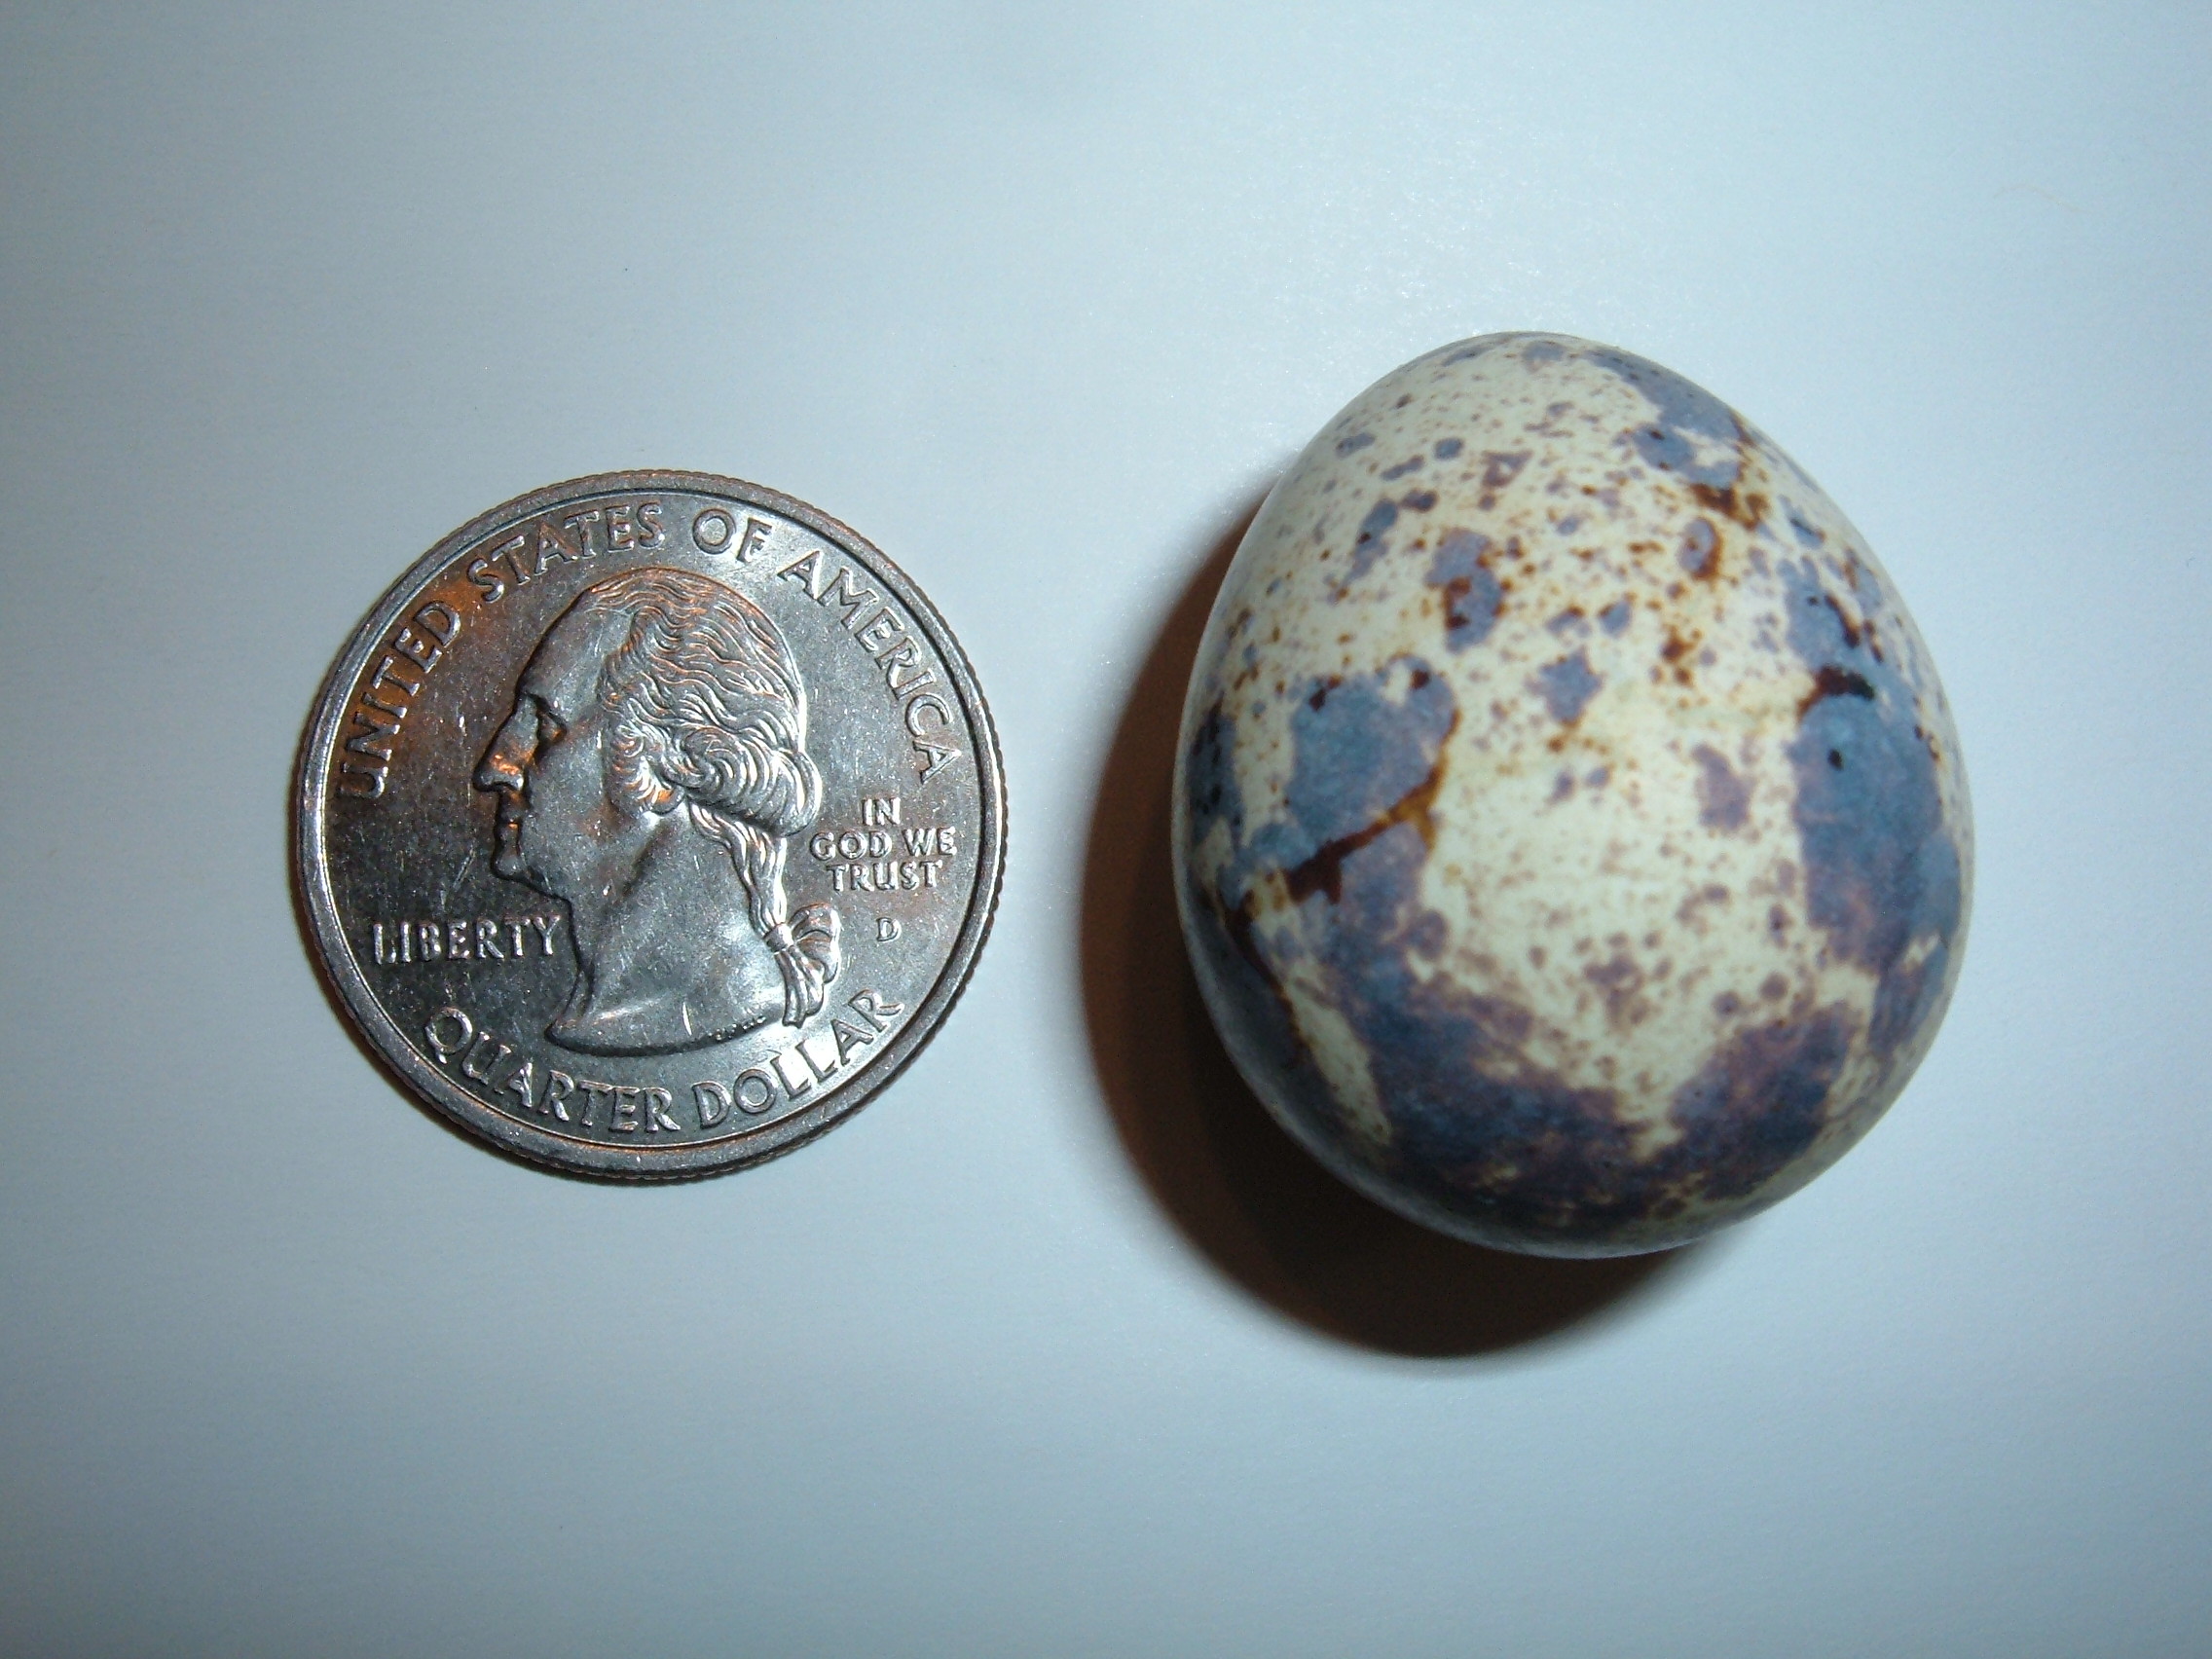 Japanese quail egg size comparison